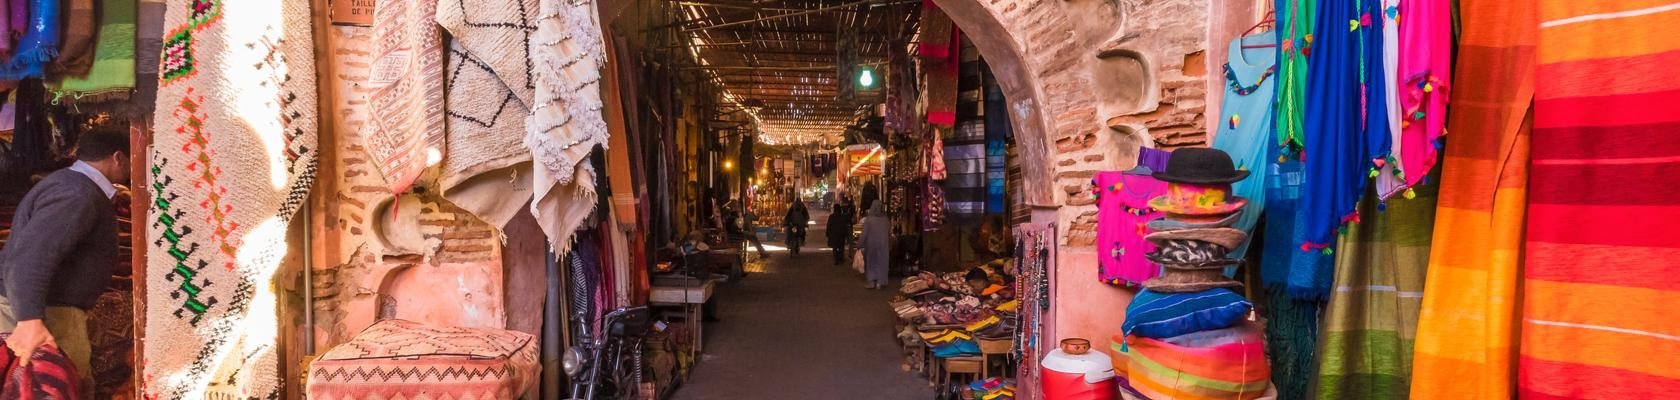 De kleurrijke souks van Marrakech